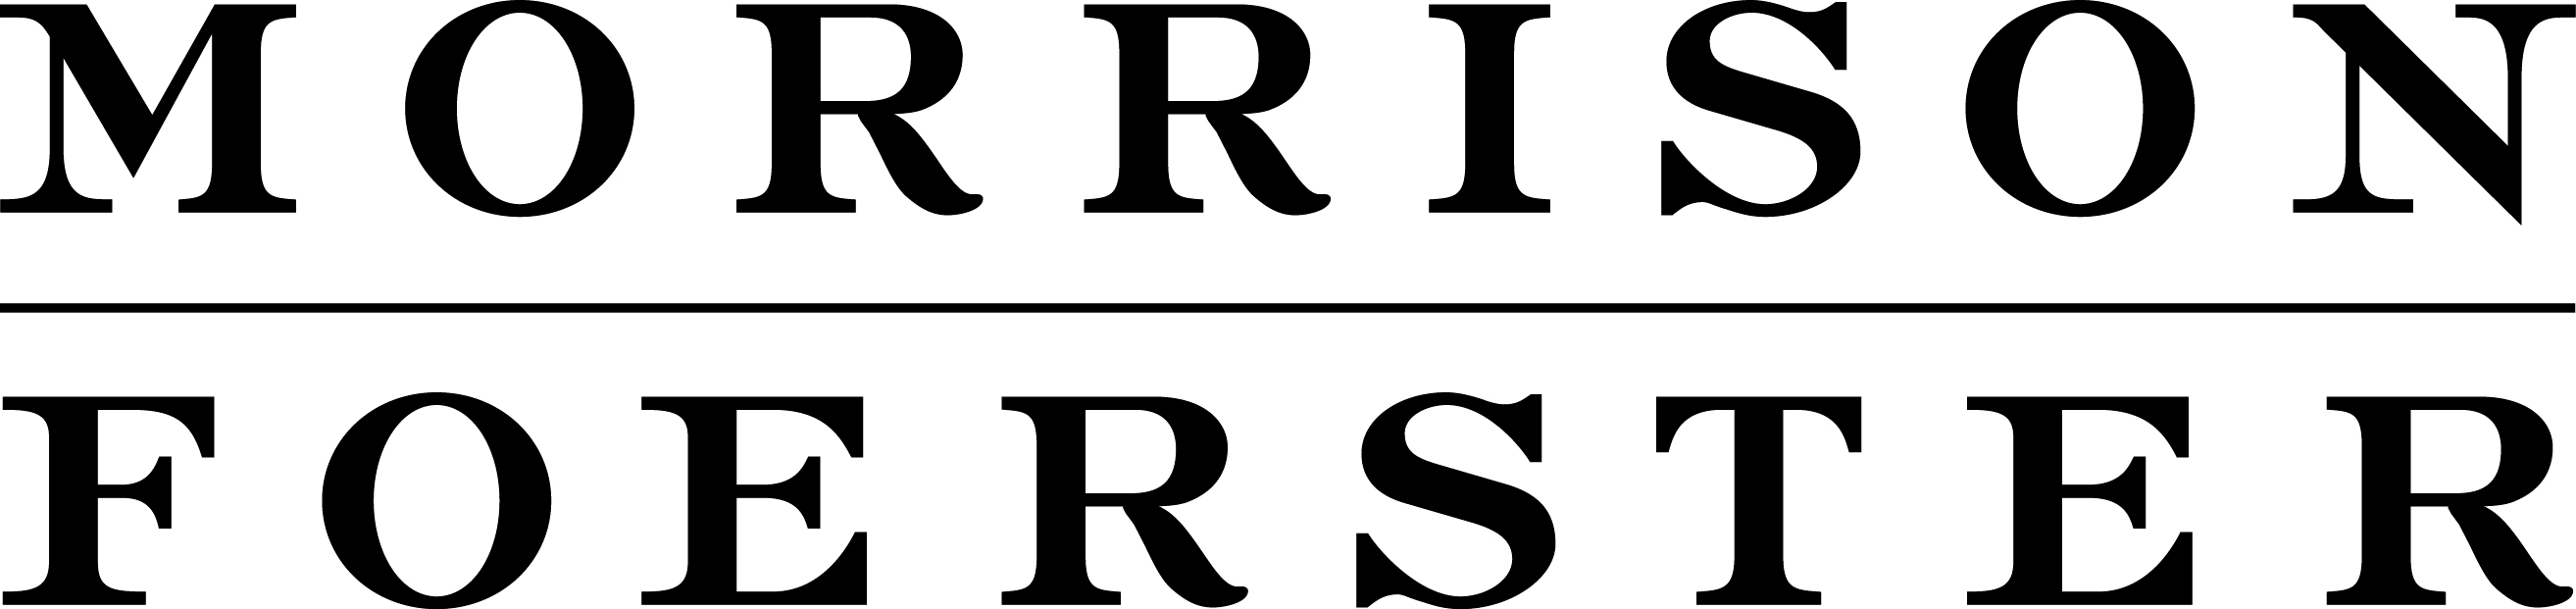 Image result for morrison foerster png logo